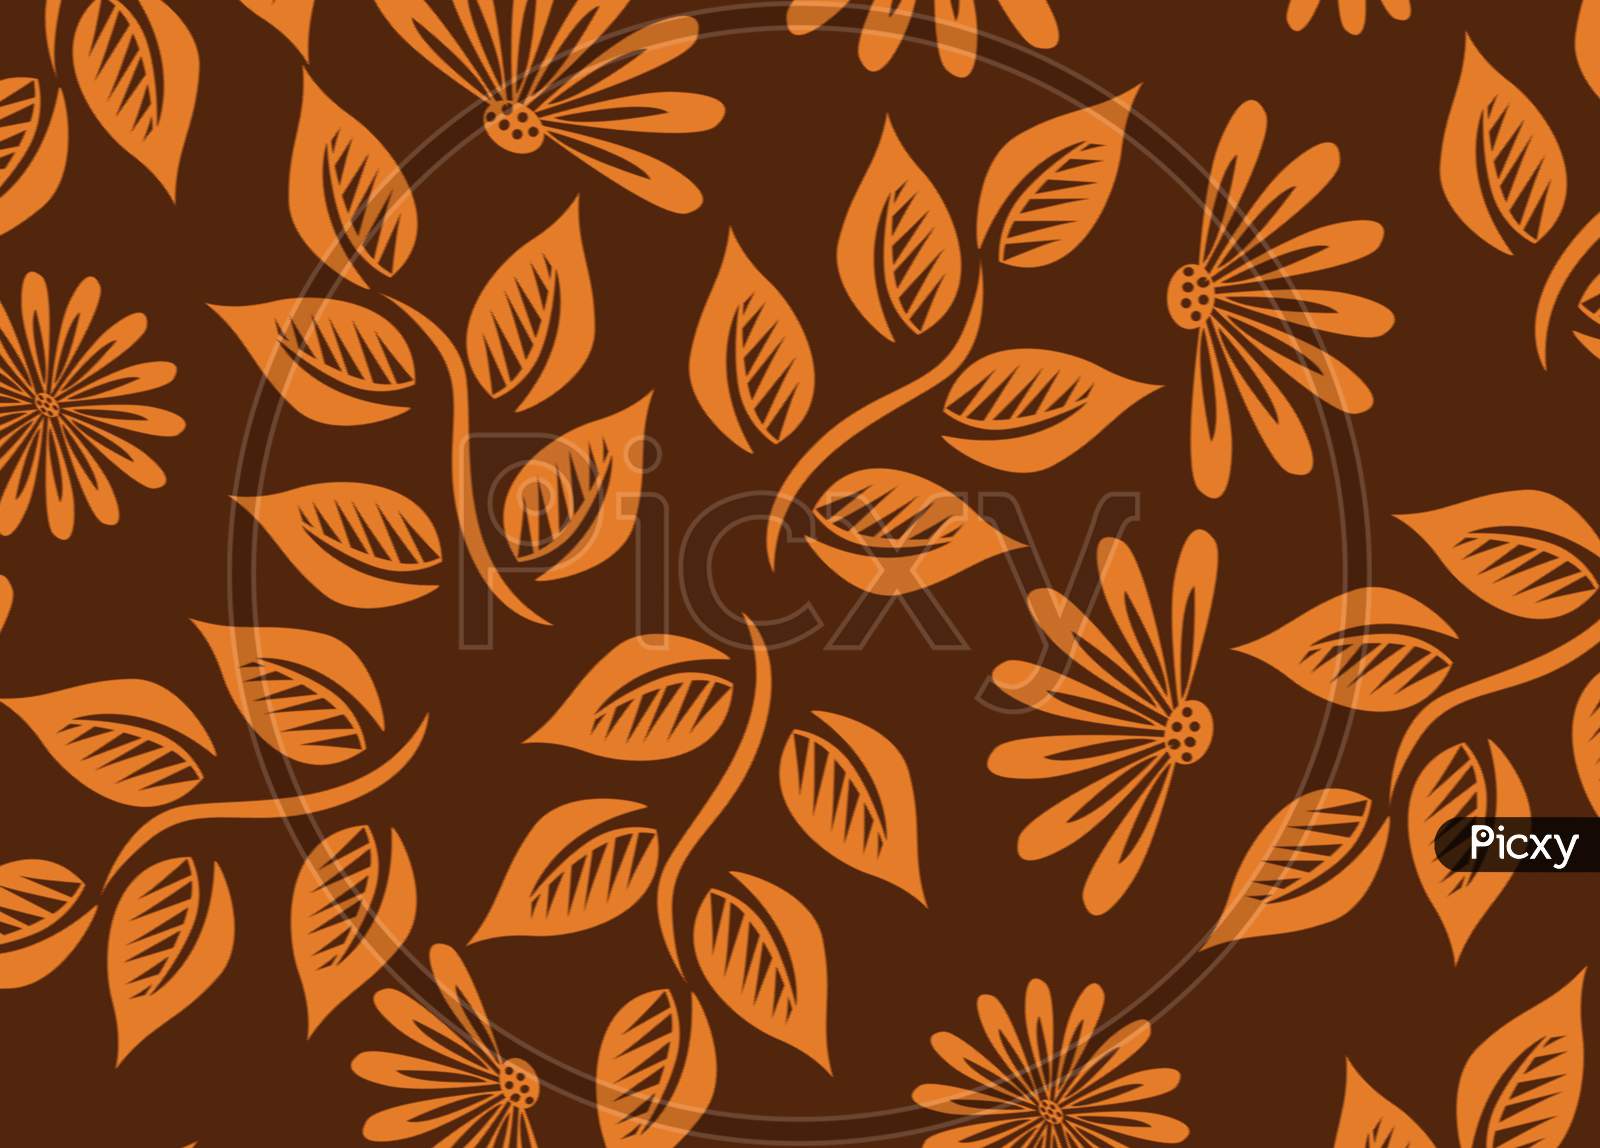 Flower and Leaf Design Background